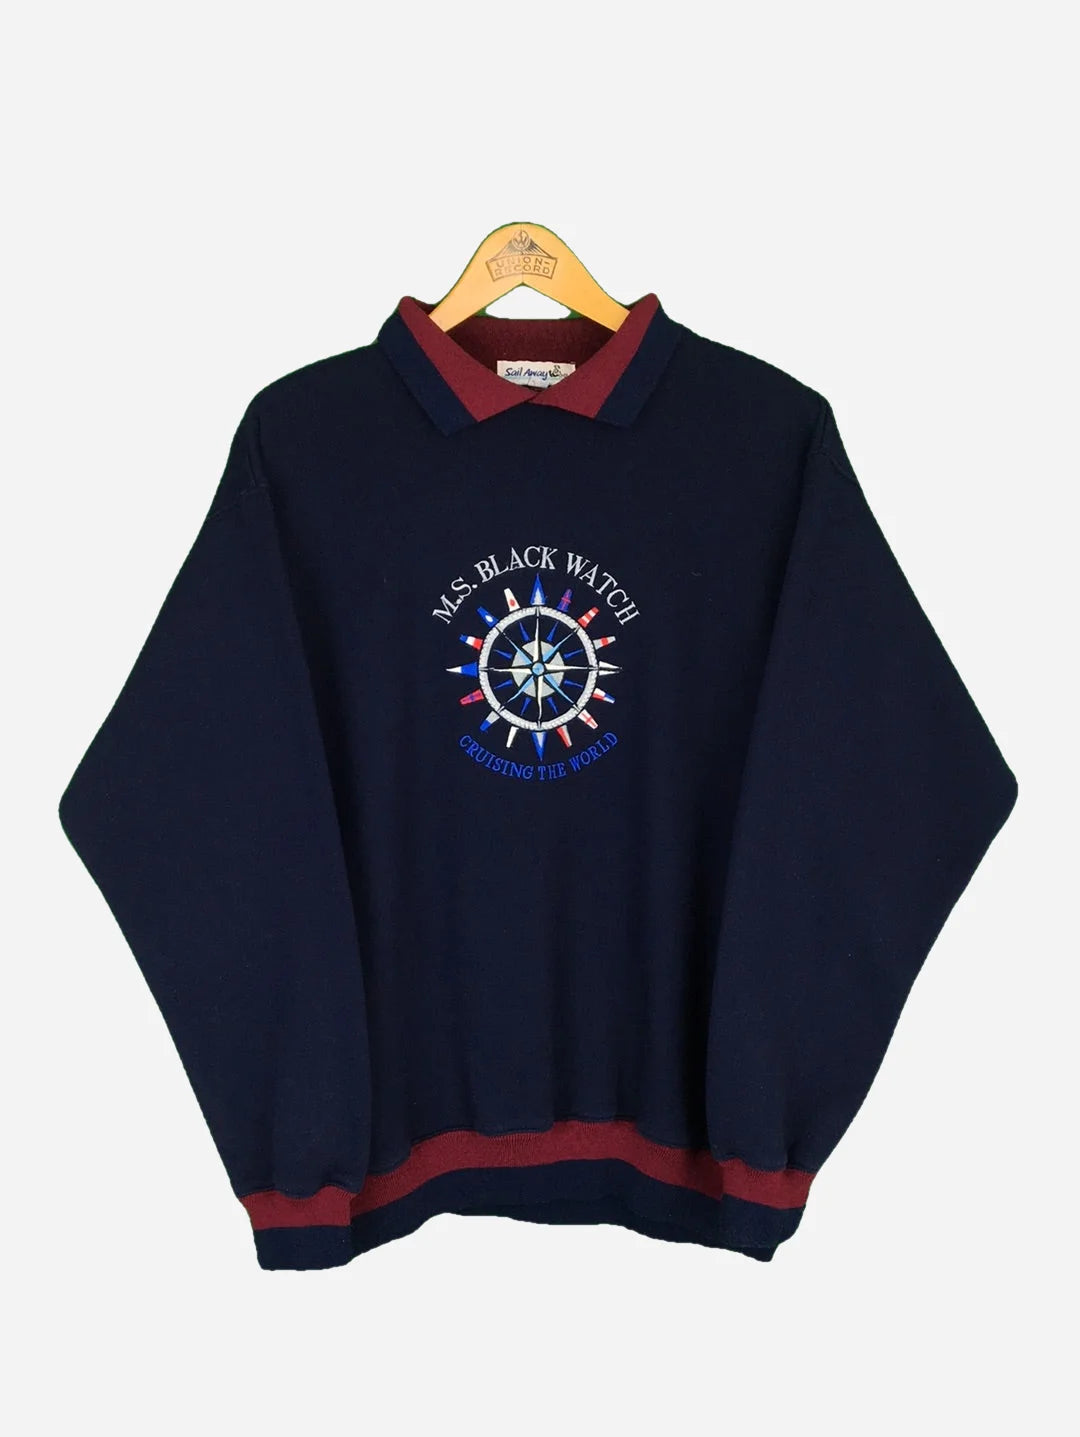 M.S. Black Watch Sweater (M)